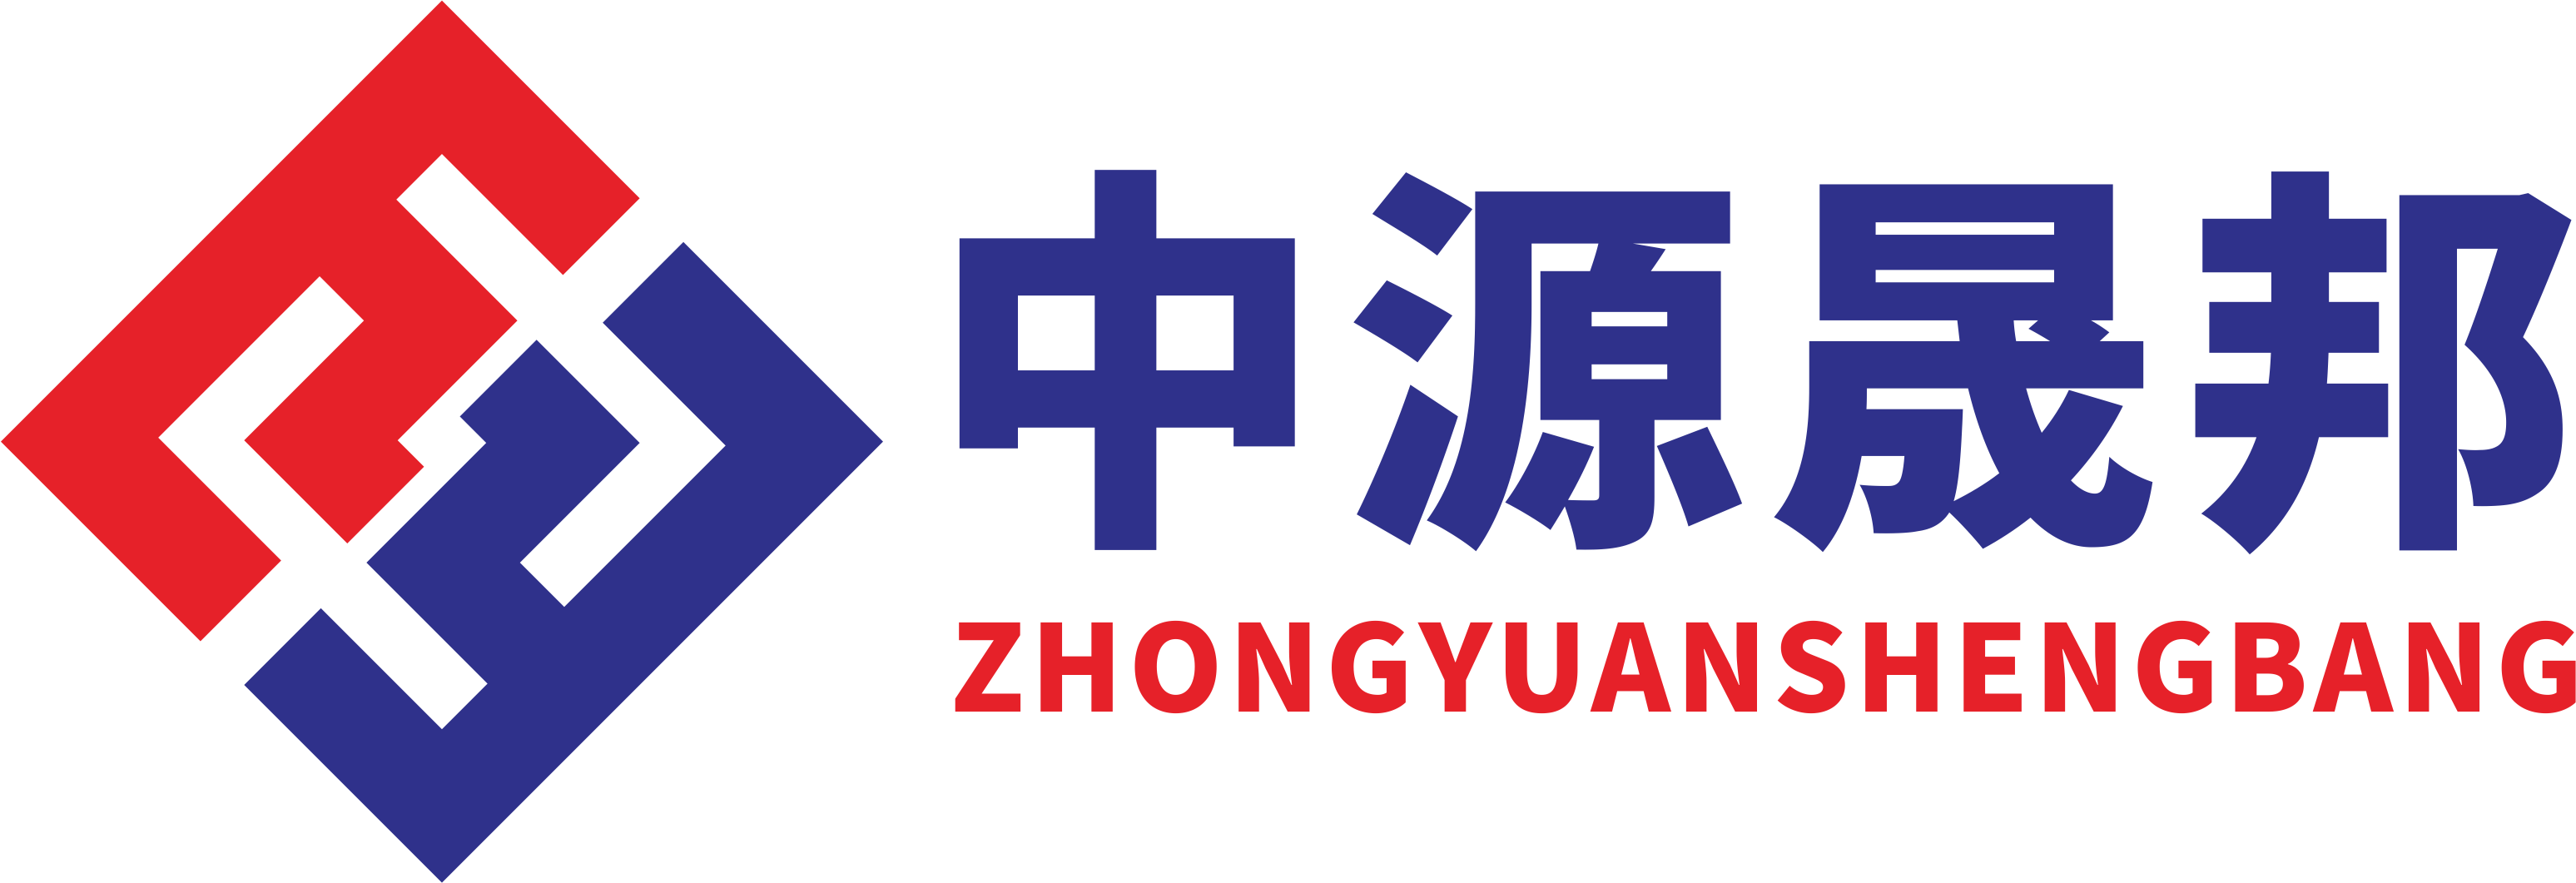 ZHONGYUAN SHENGBANG (XIAMEN) TECHNOLOGY CO.,LTD.